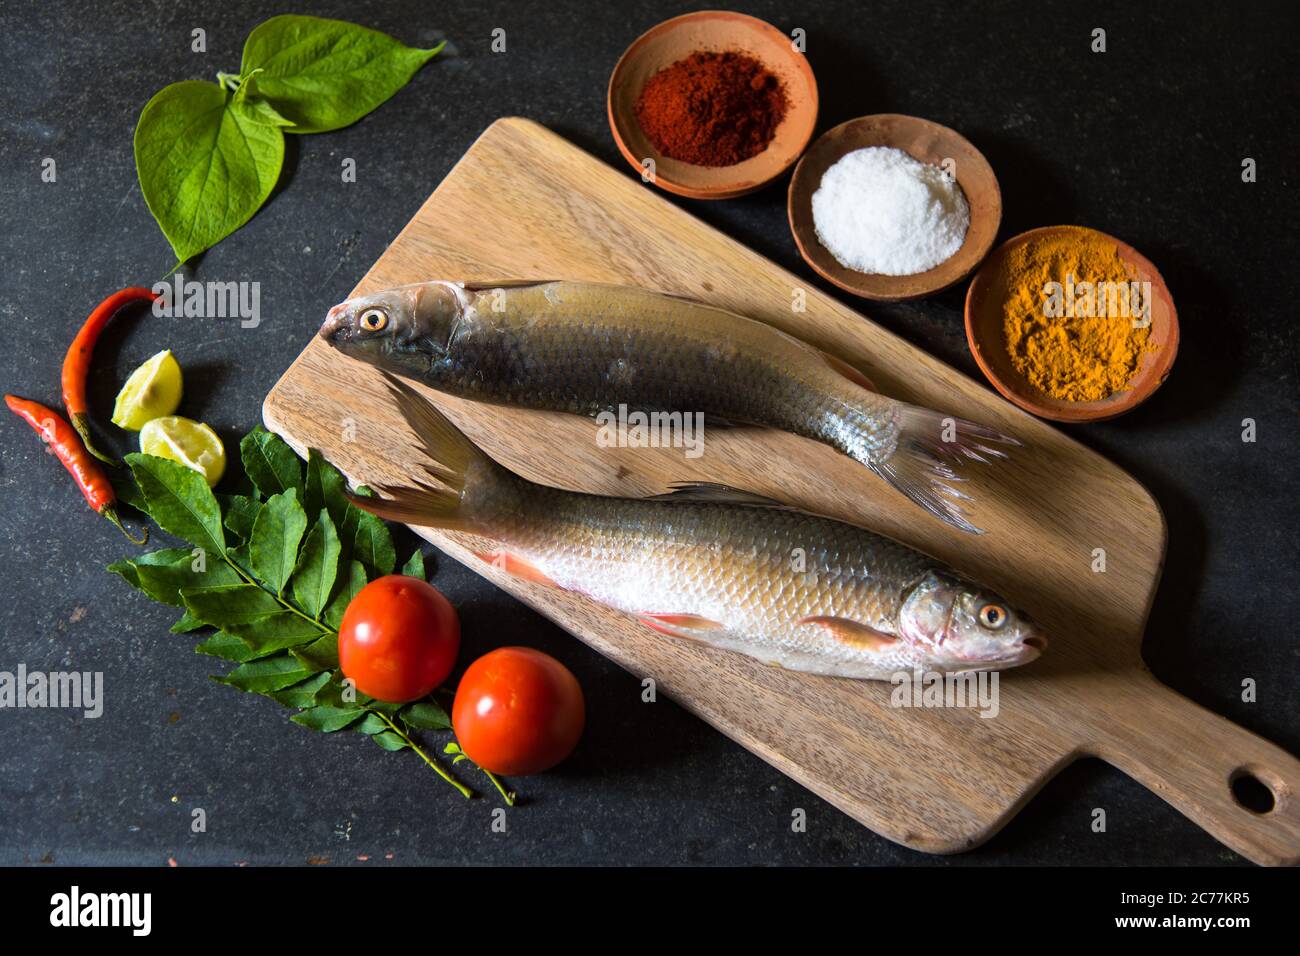 Arrangement de poissons crus avec utilisation de l'accent sélectif sur une partie particulière du poisson et le reste du poisson et d'autres ingrédients flou. Banque D'Images